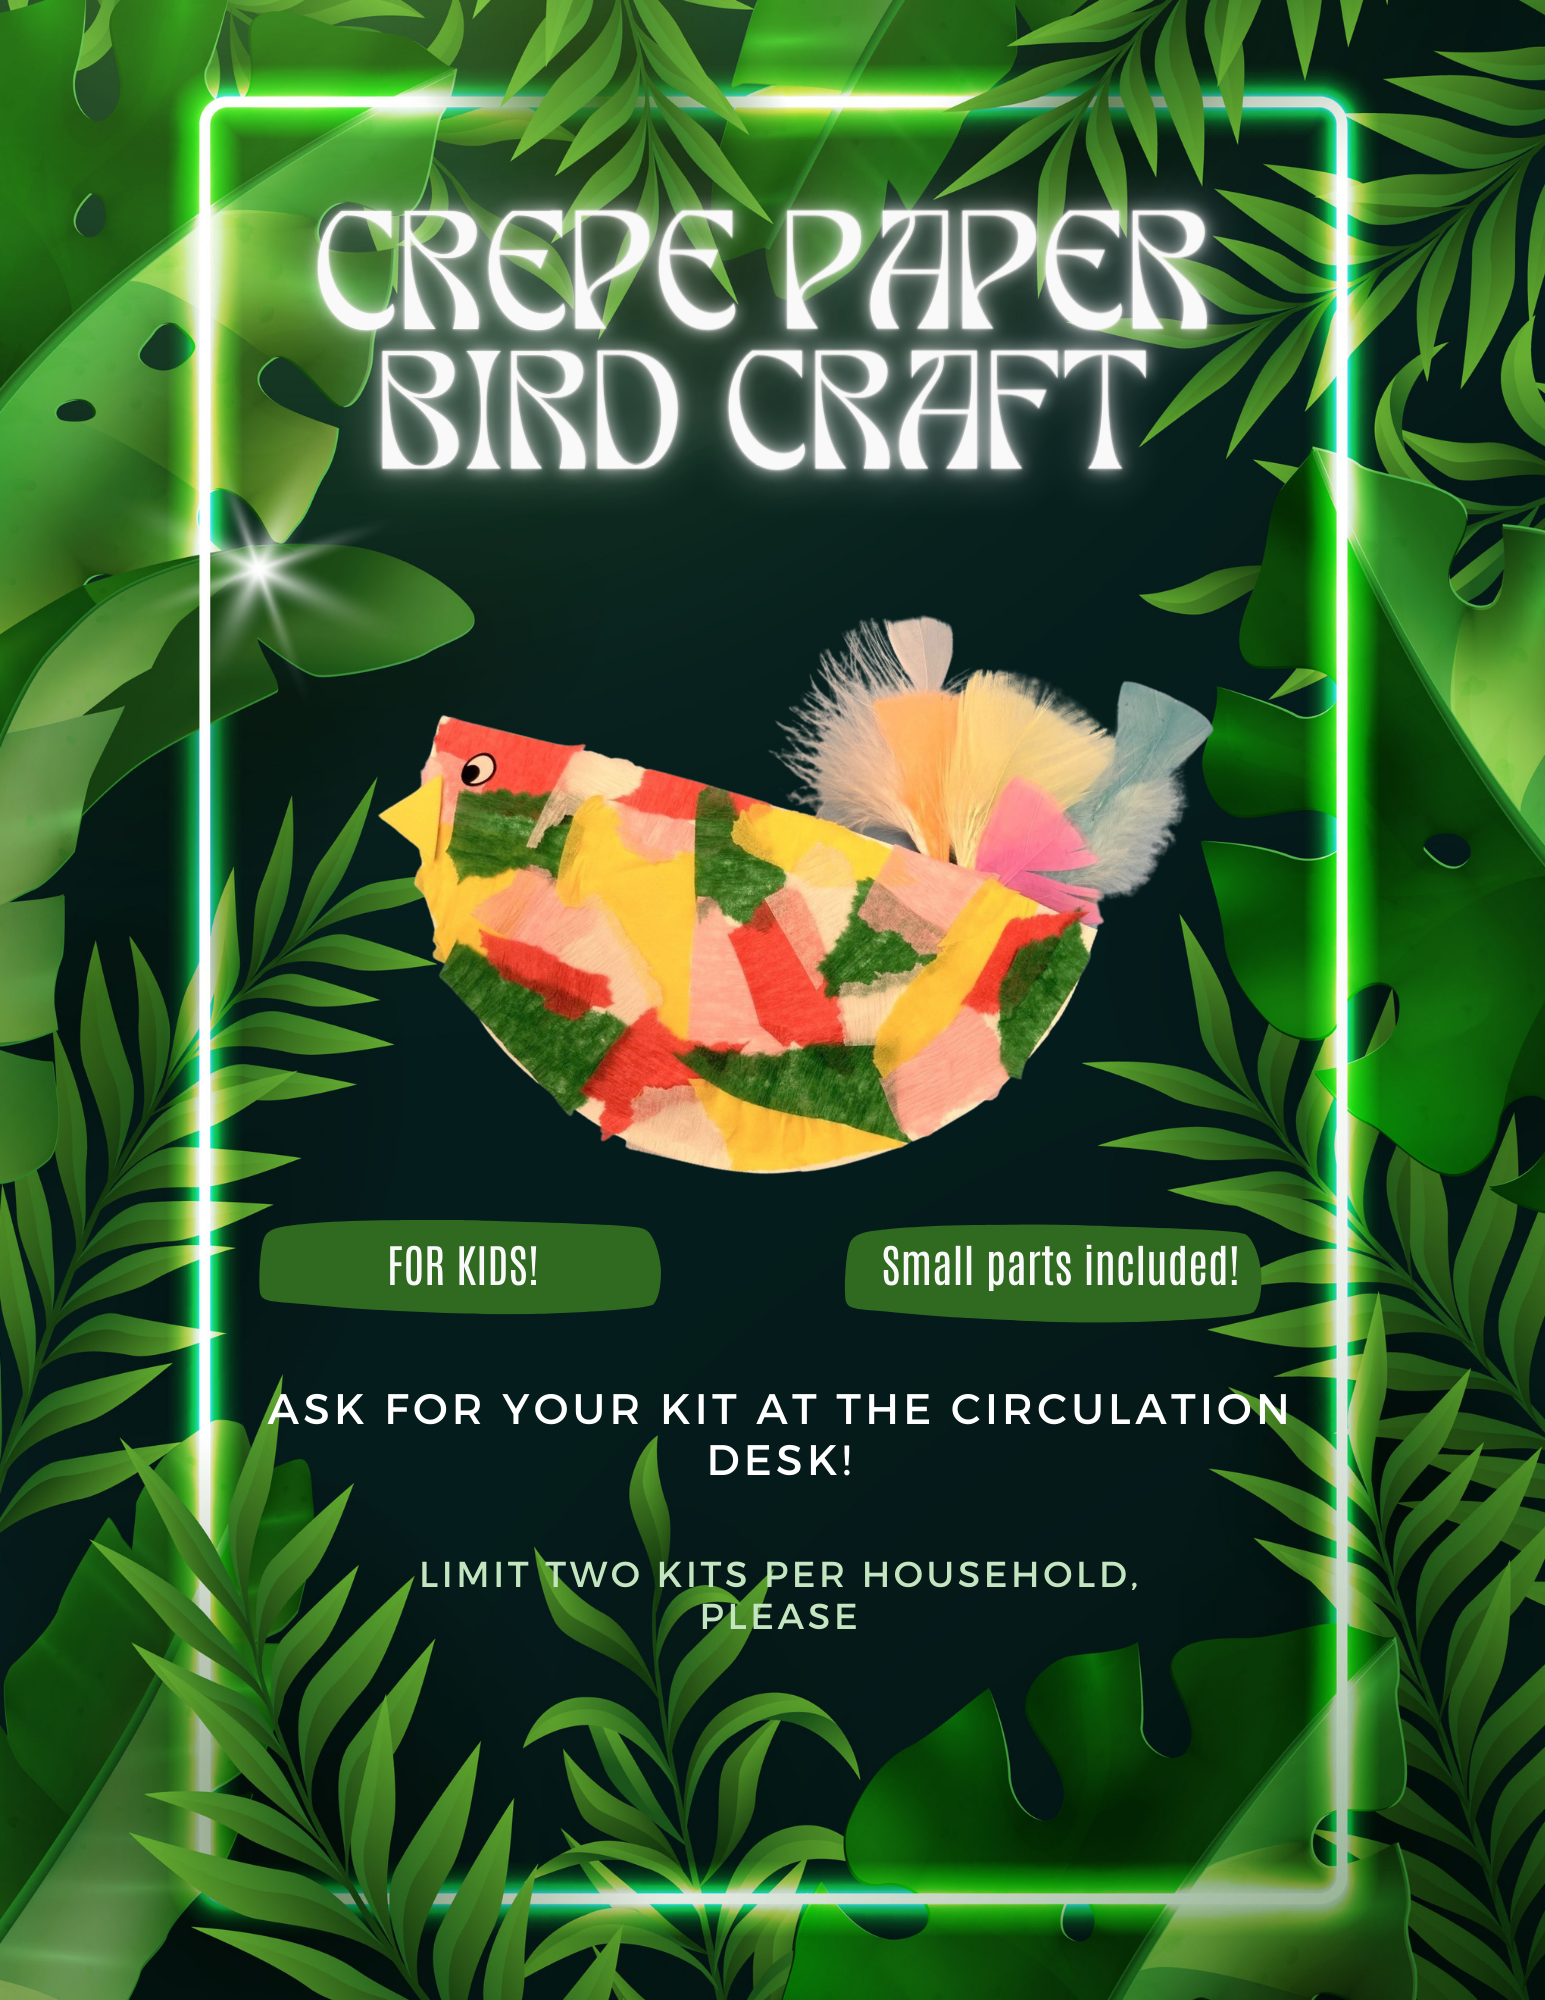 Crepe paper bird craft flyer